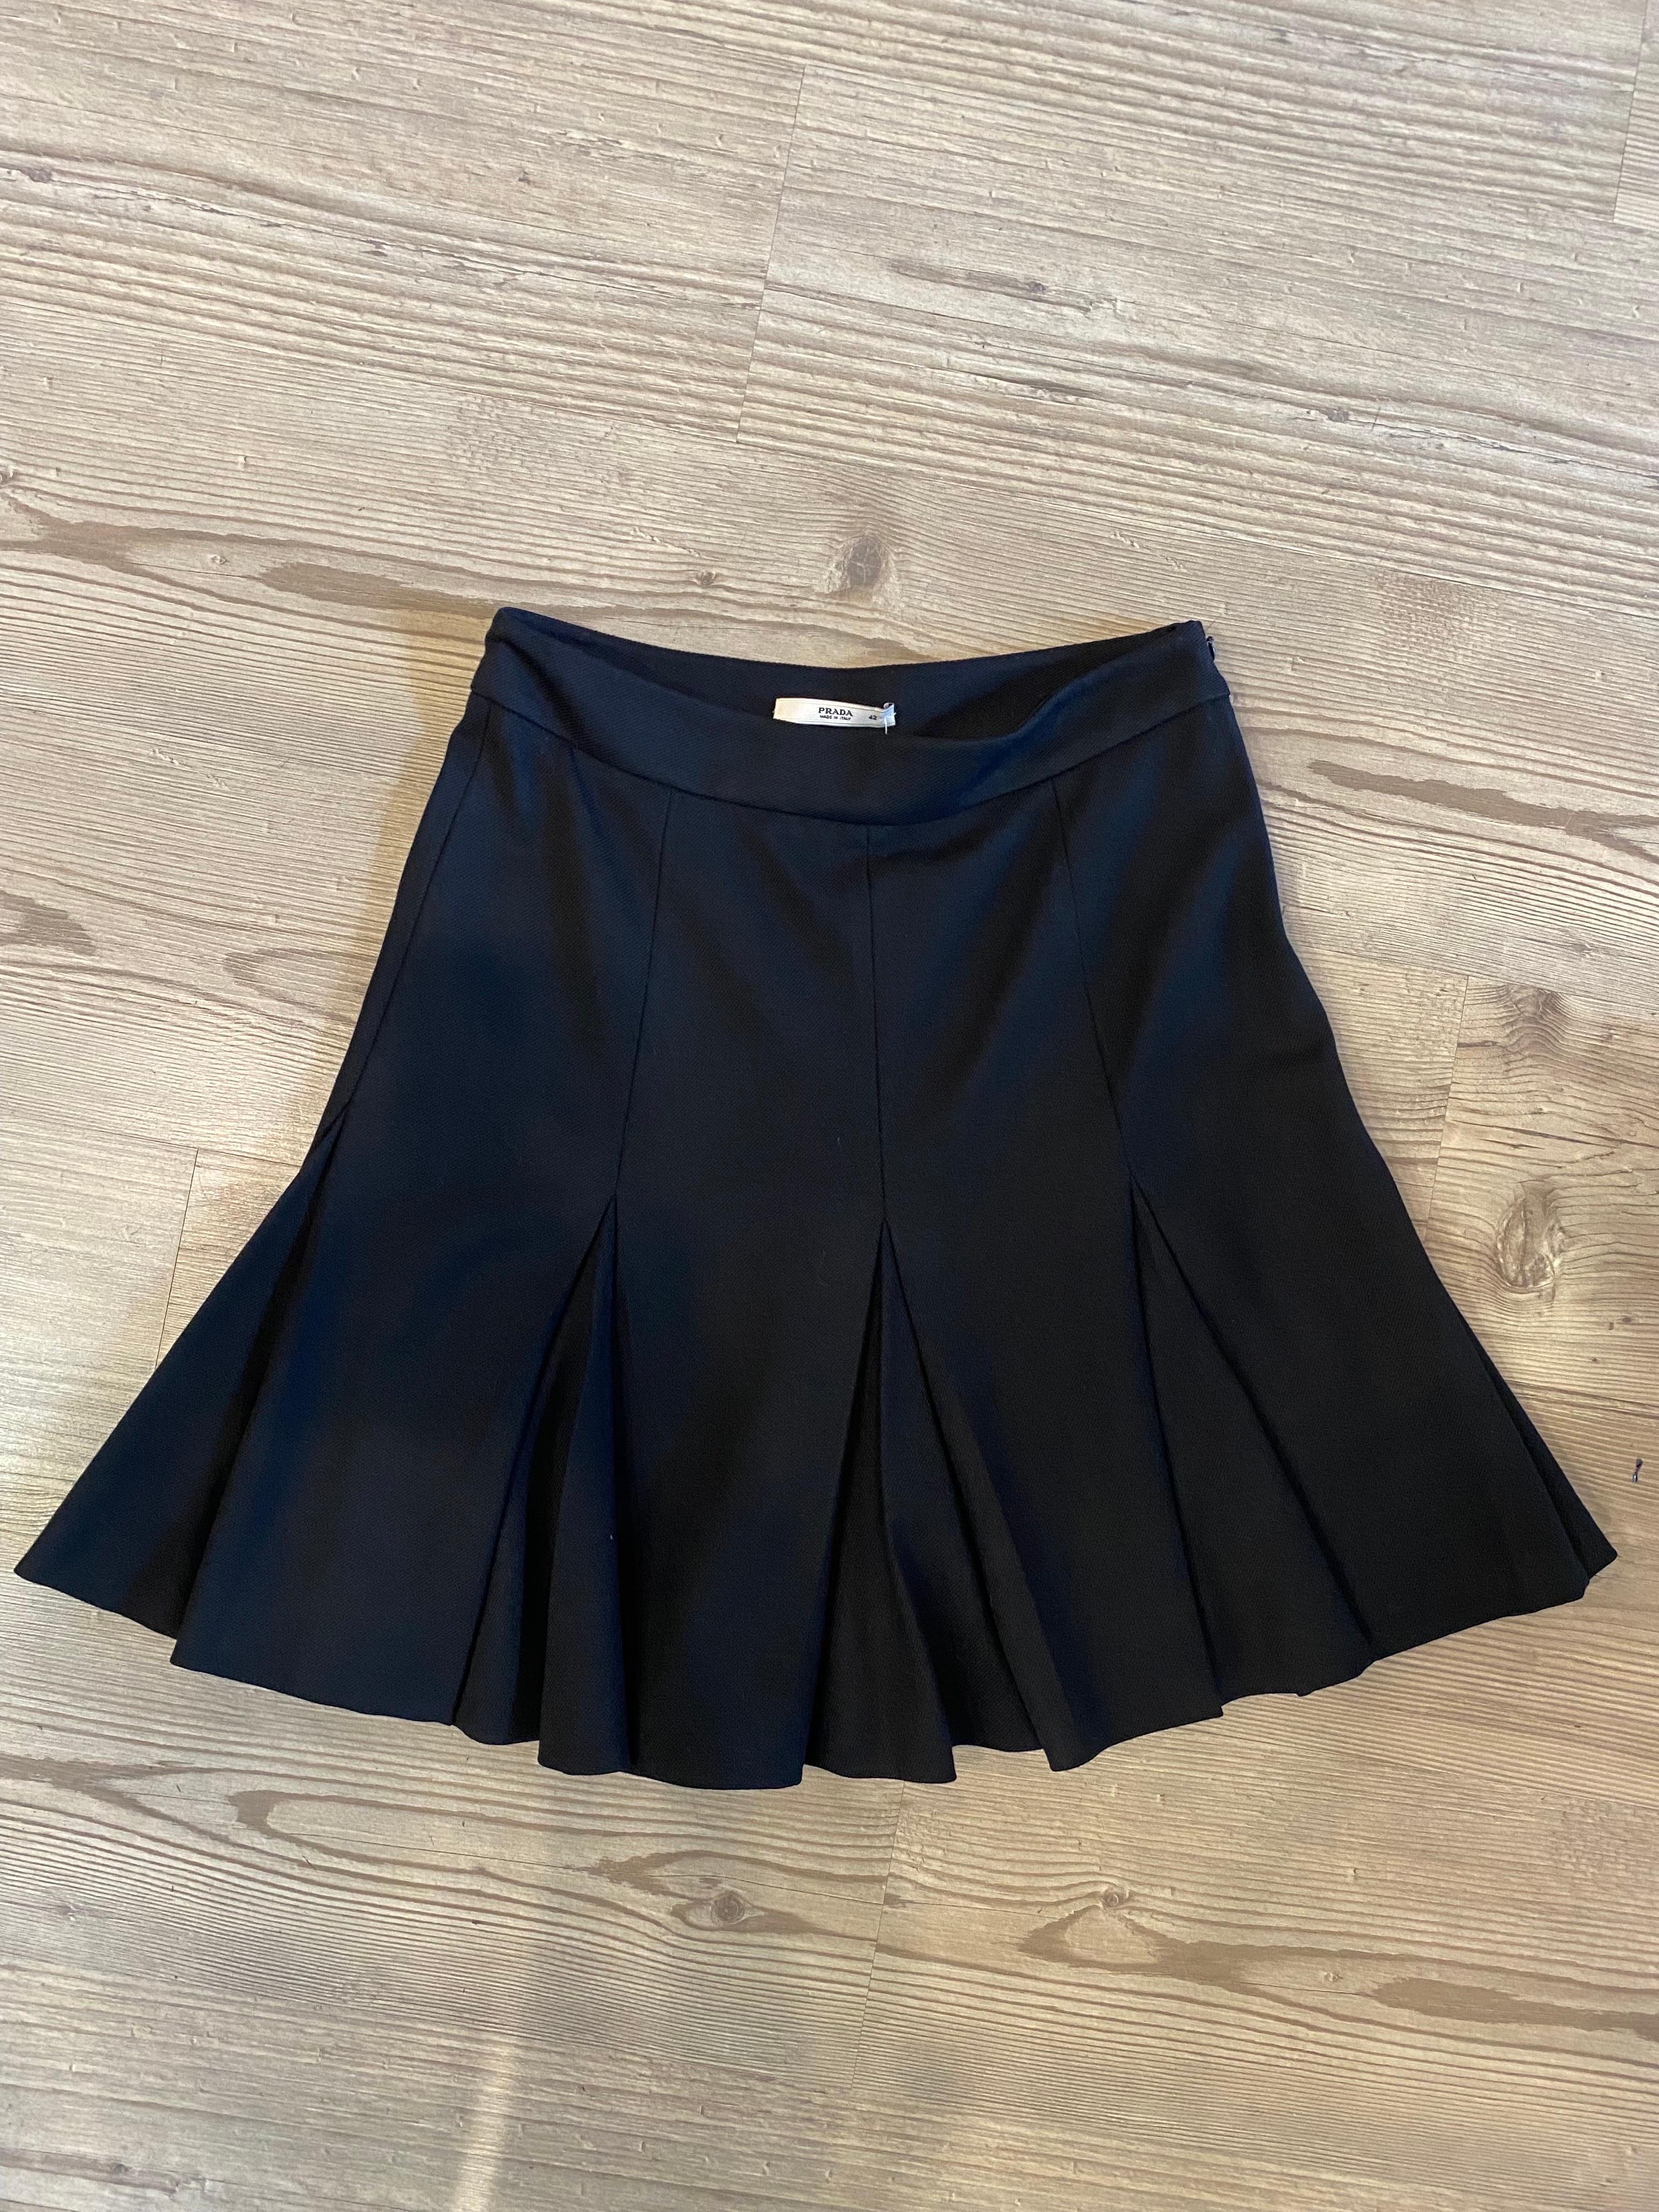 Black skirt Prada For Sale 2